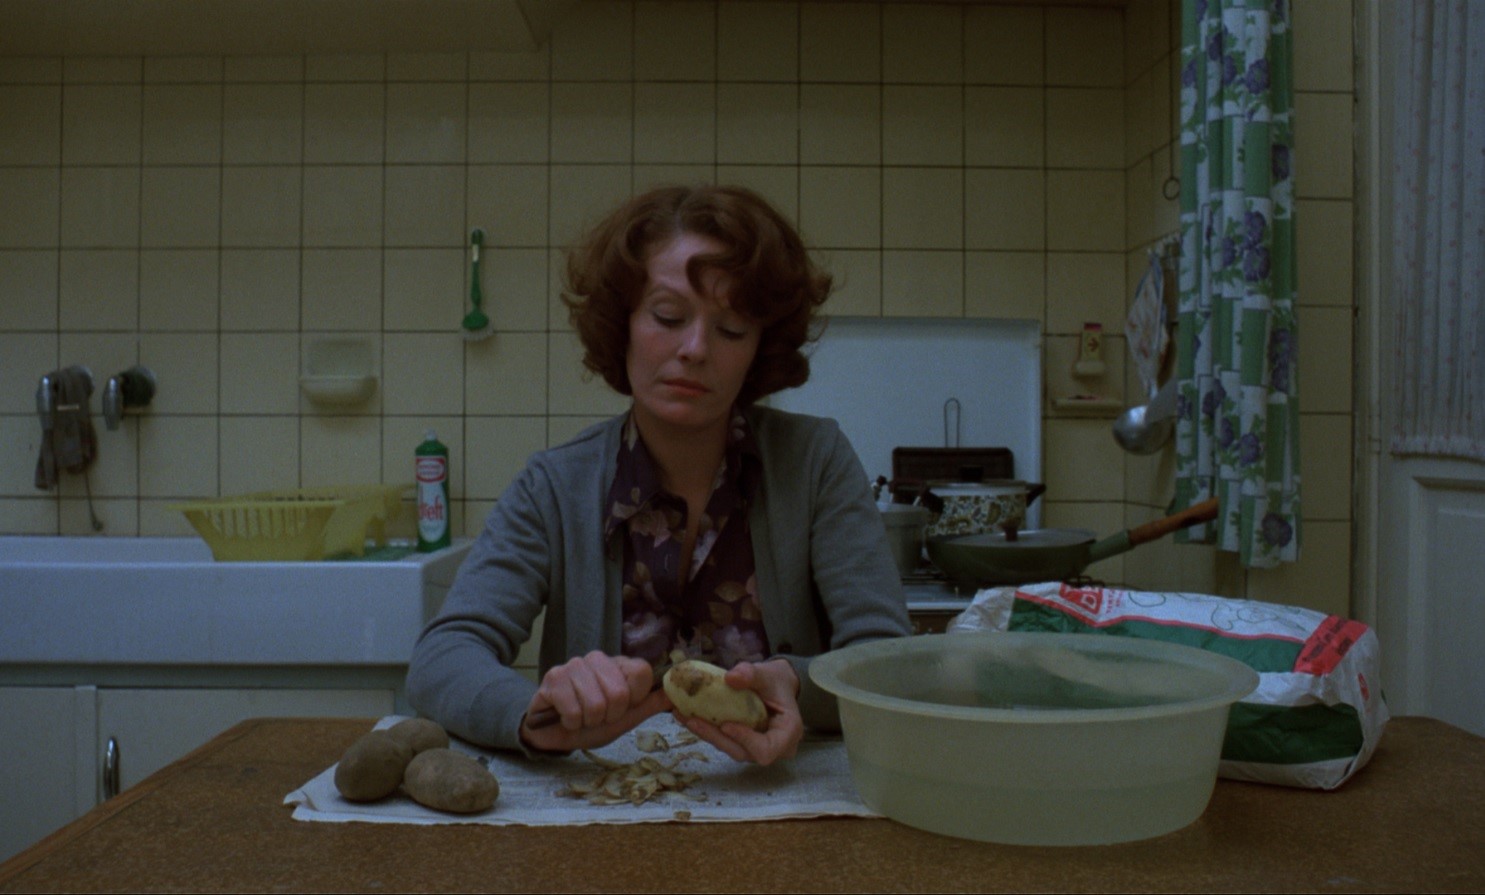 Kadr z filmu. Kobieta w kwiecistej bluzce, szarym sweterku, w kuchni. Siedzi przy stole i obiera ziemniaki.